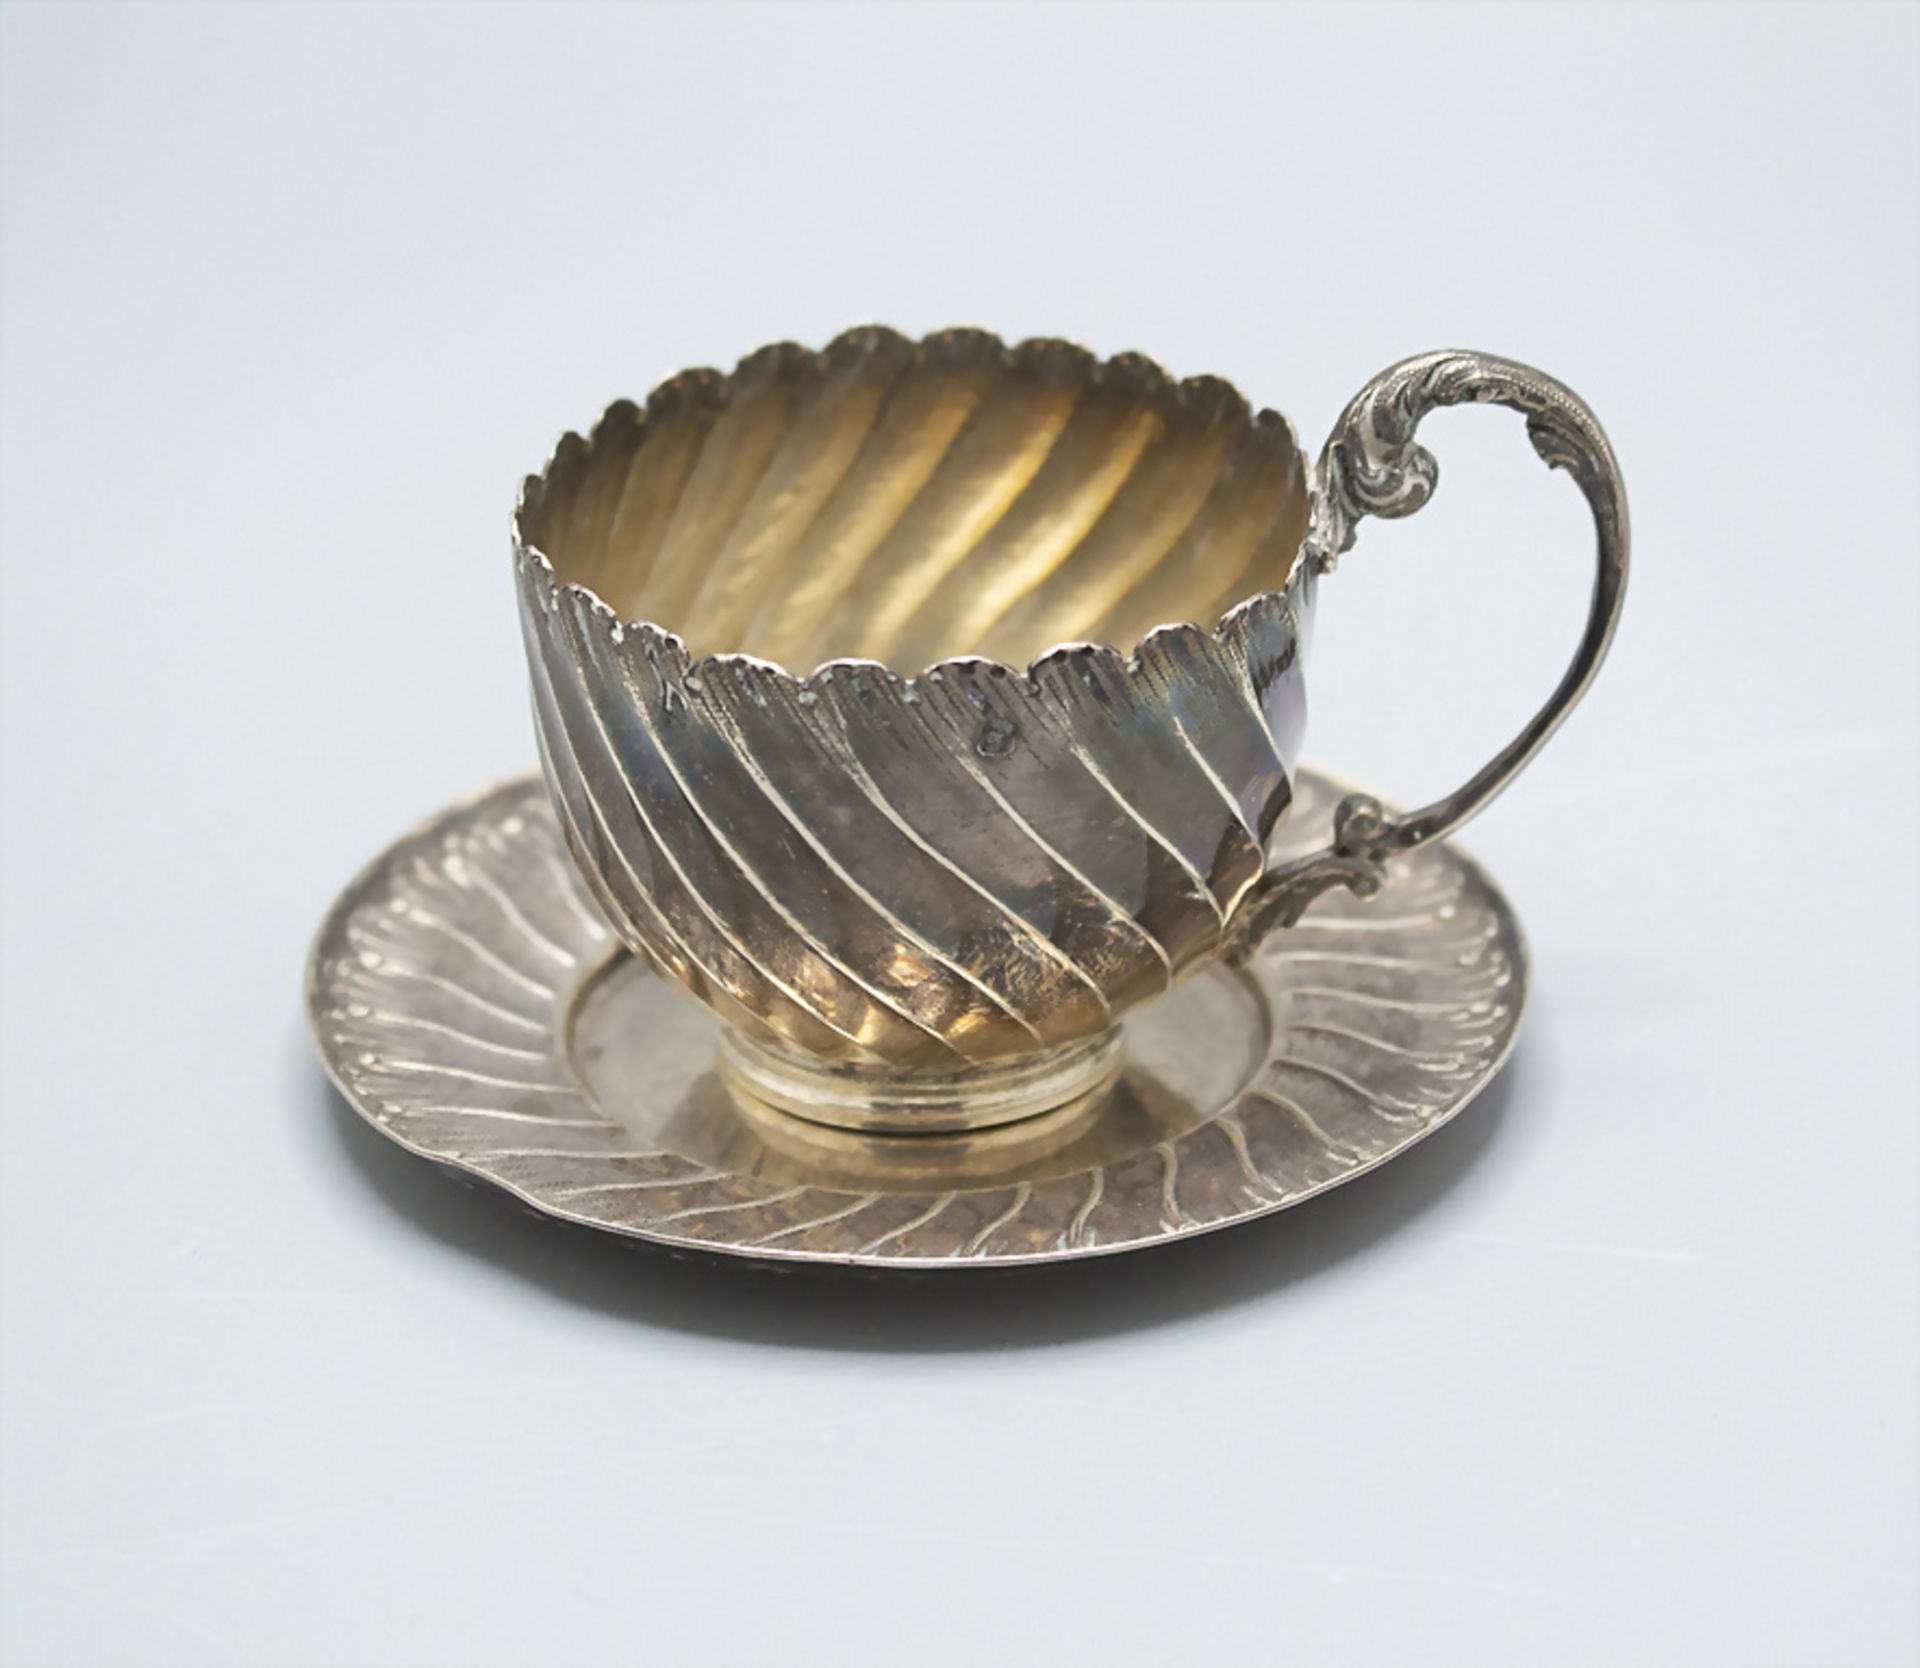 Silbertasse und Untertasse / A silver cup and saucer, Simon Slisonksi, Paris, um 1880